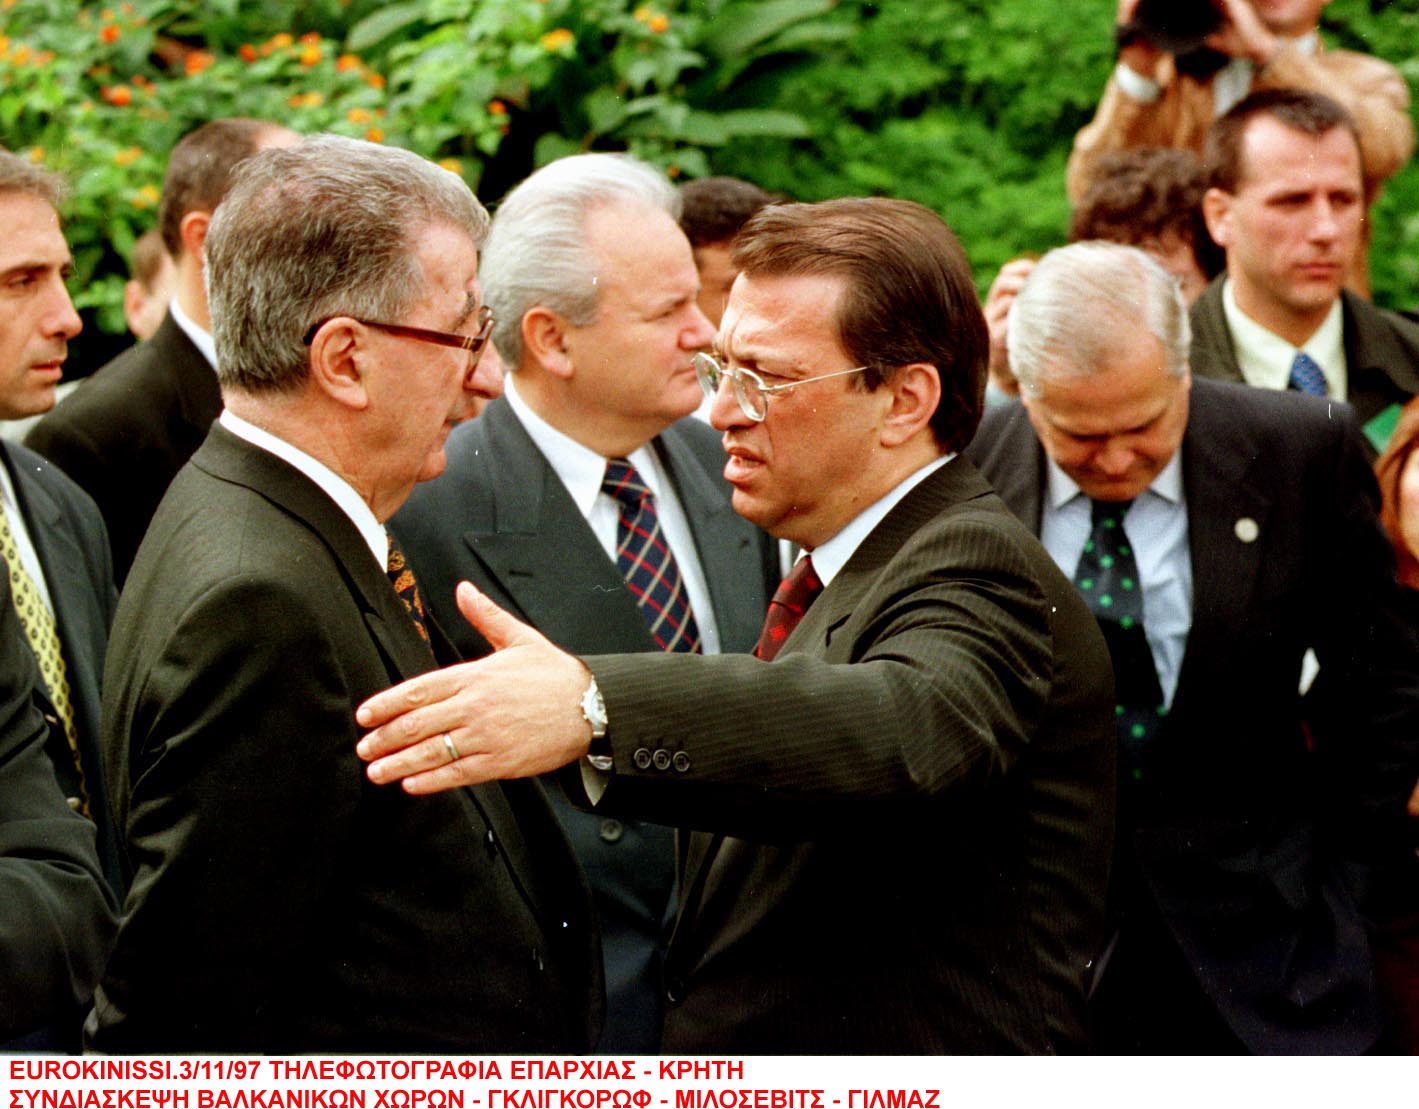 3/11/1997: Γκλιγκόροφ, Γιλμάζ, Μιλόσεβιτς στη Βαλκανική διάσκεψη της Κρήτης